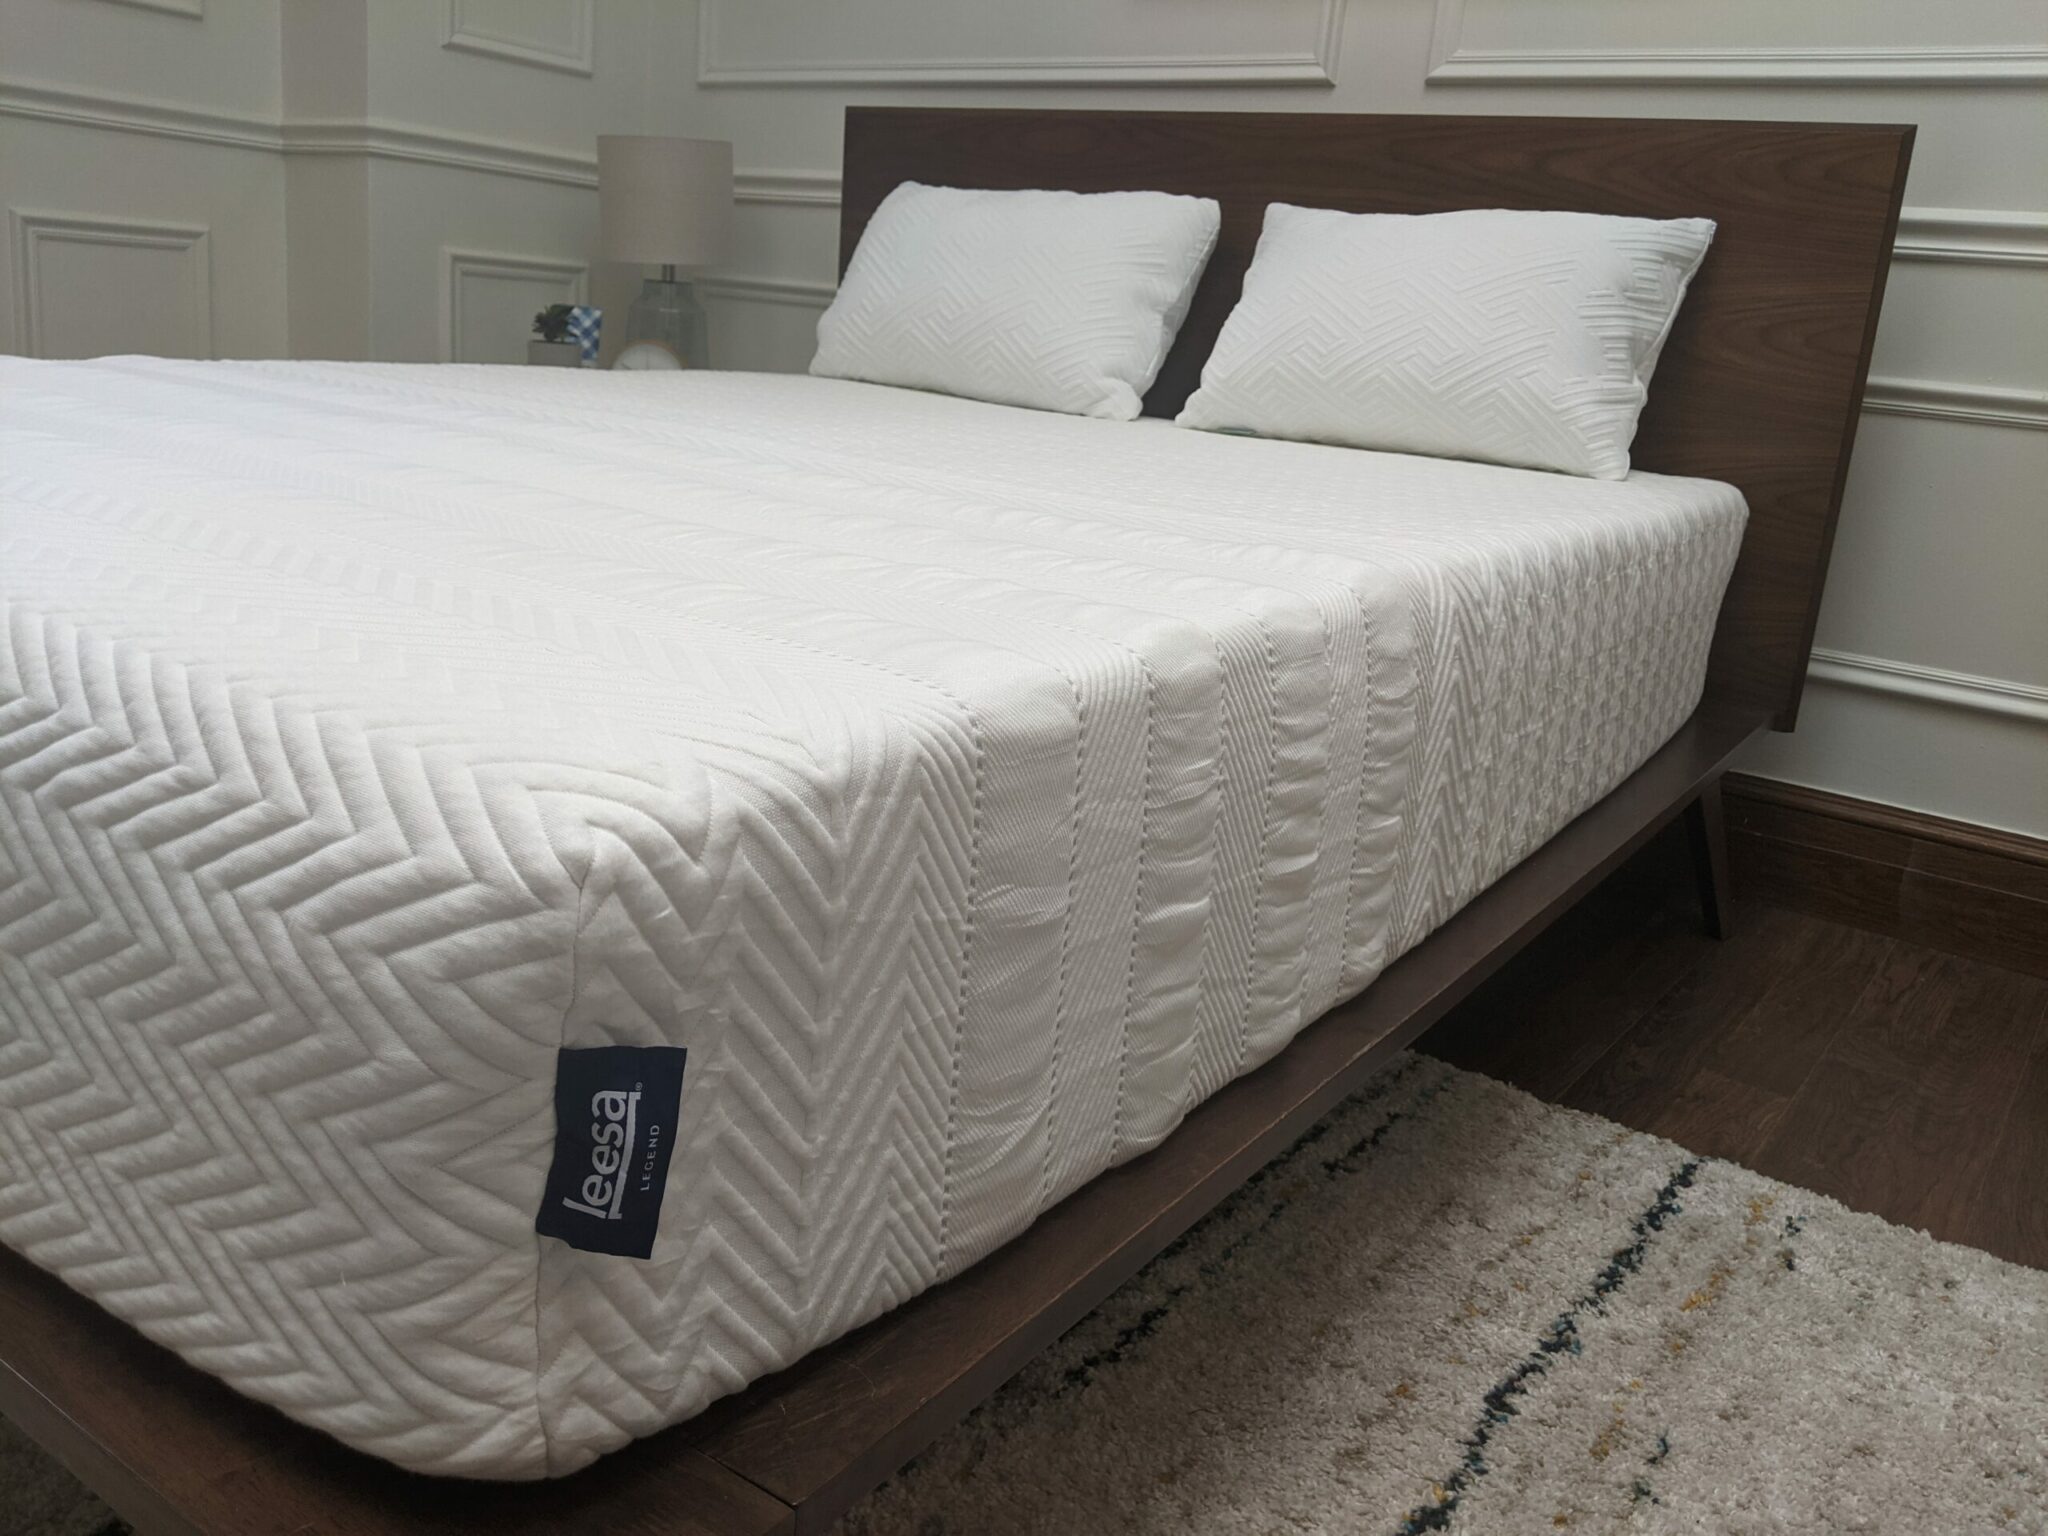 leesa legend hybrid mattress review